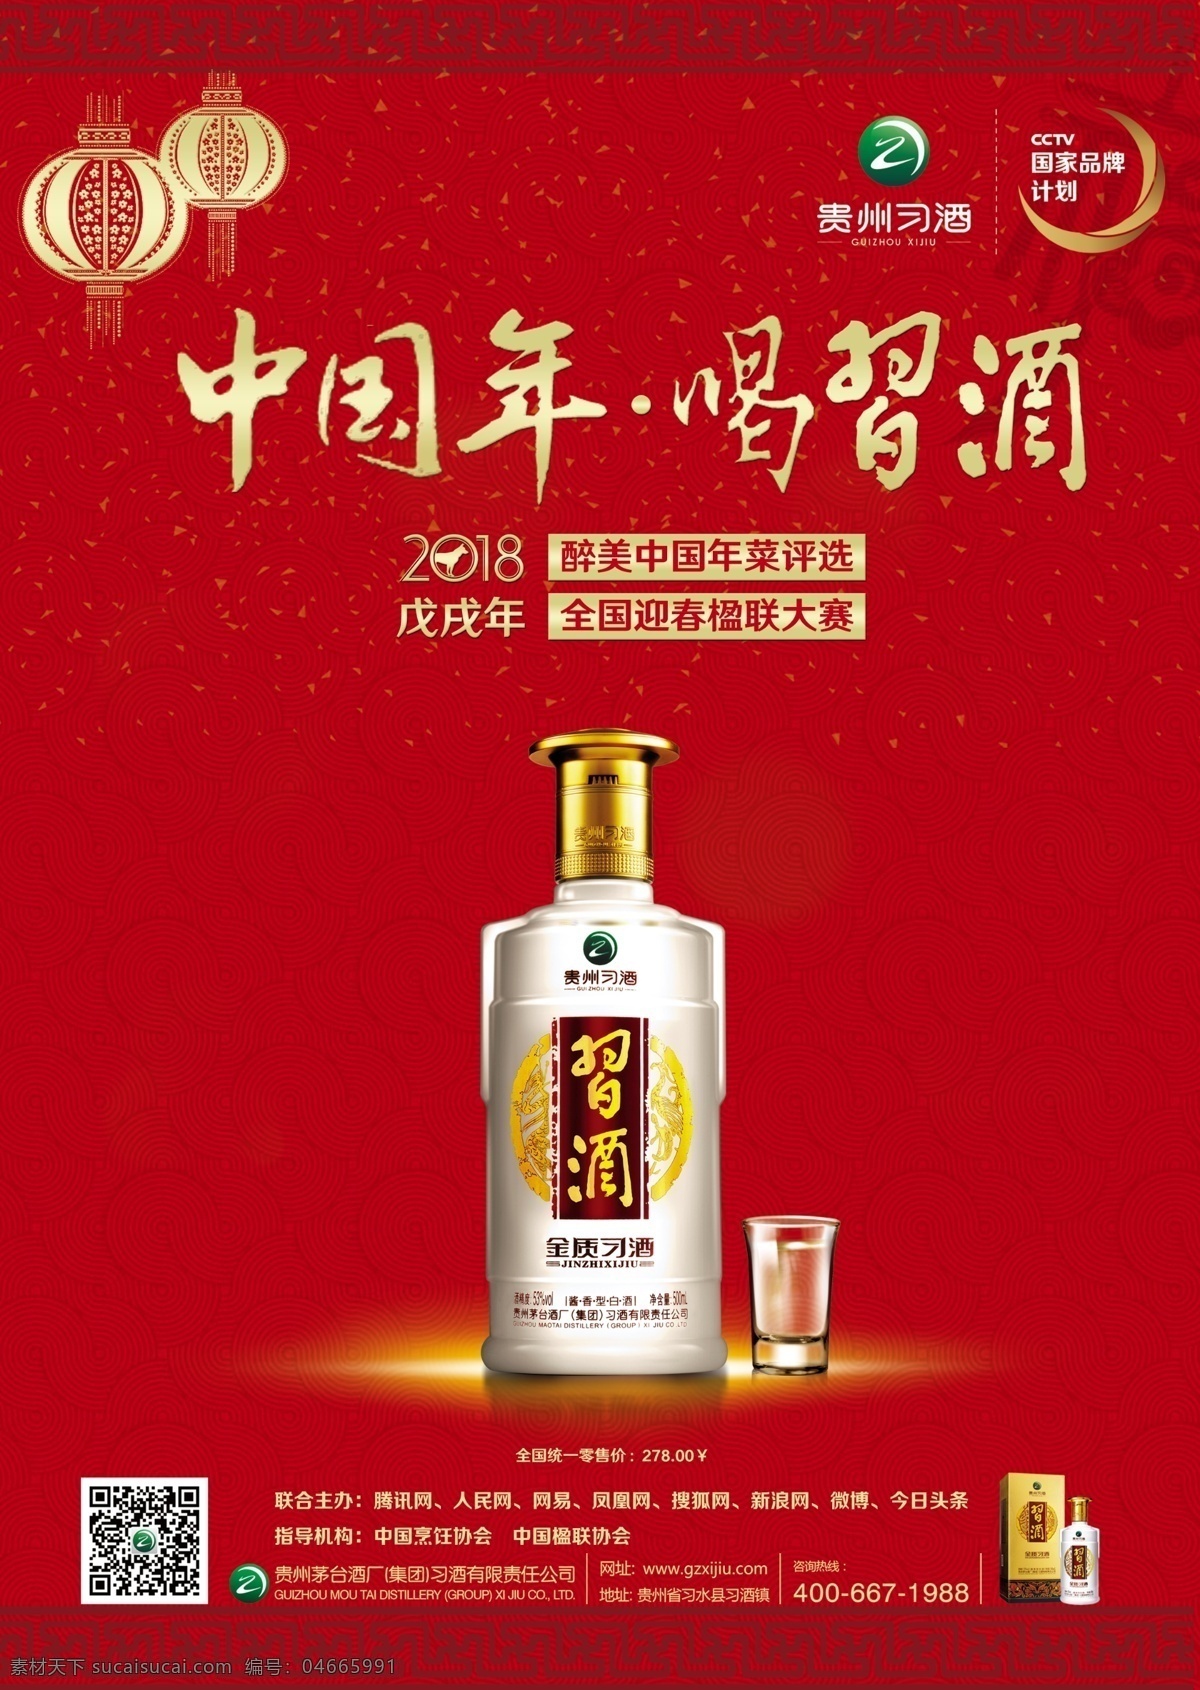 贵州 习 酒 dm 单 习酒 中国年 国家品牌计划 腾讯网 金质习酒 2018年 dm宣传单